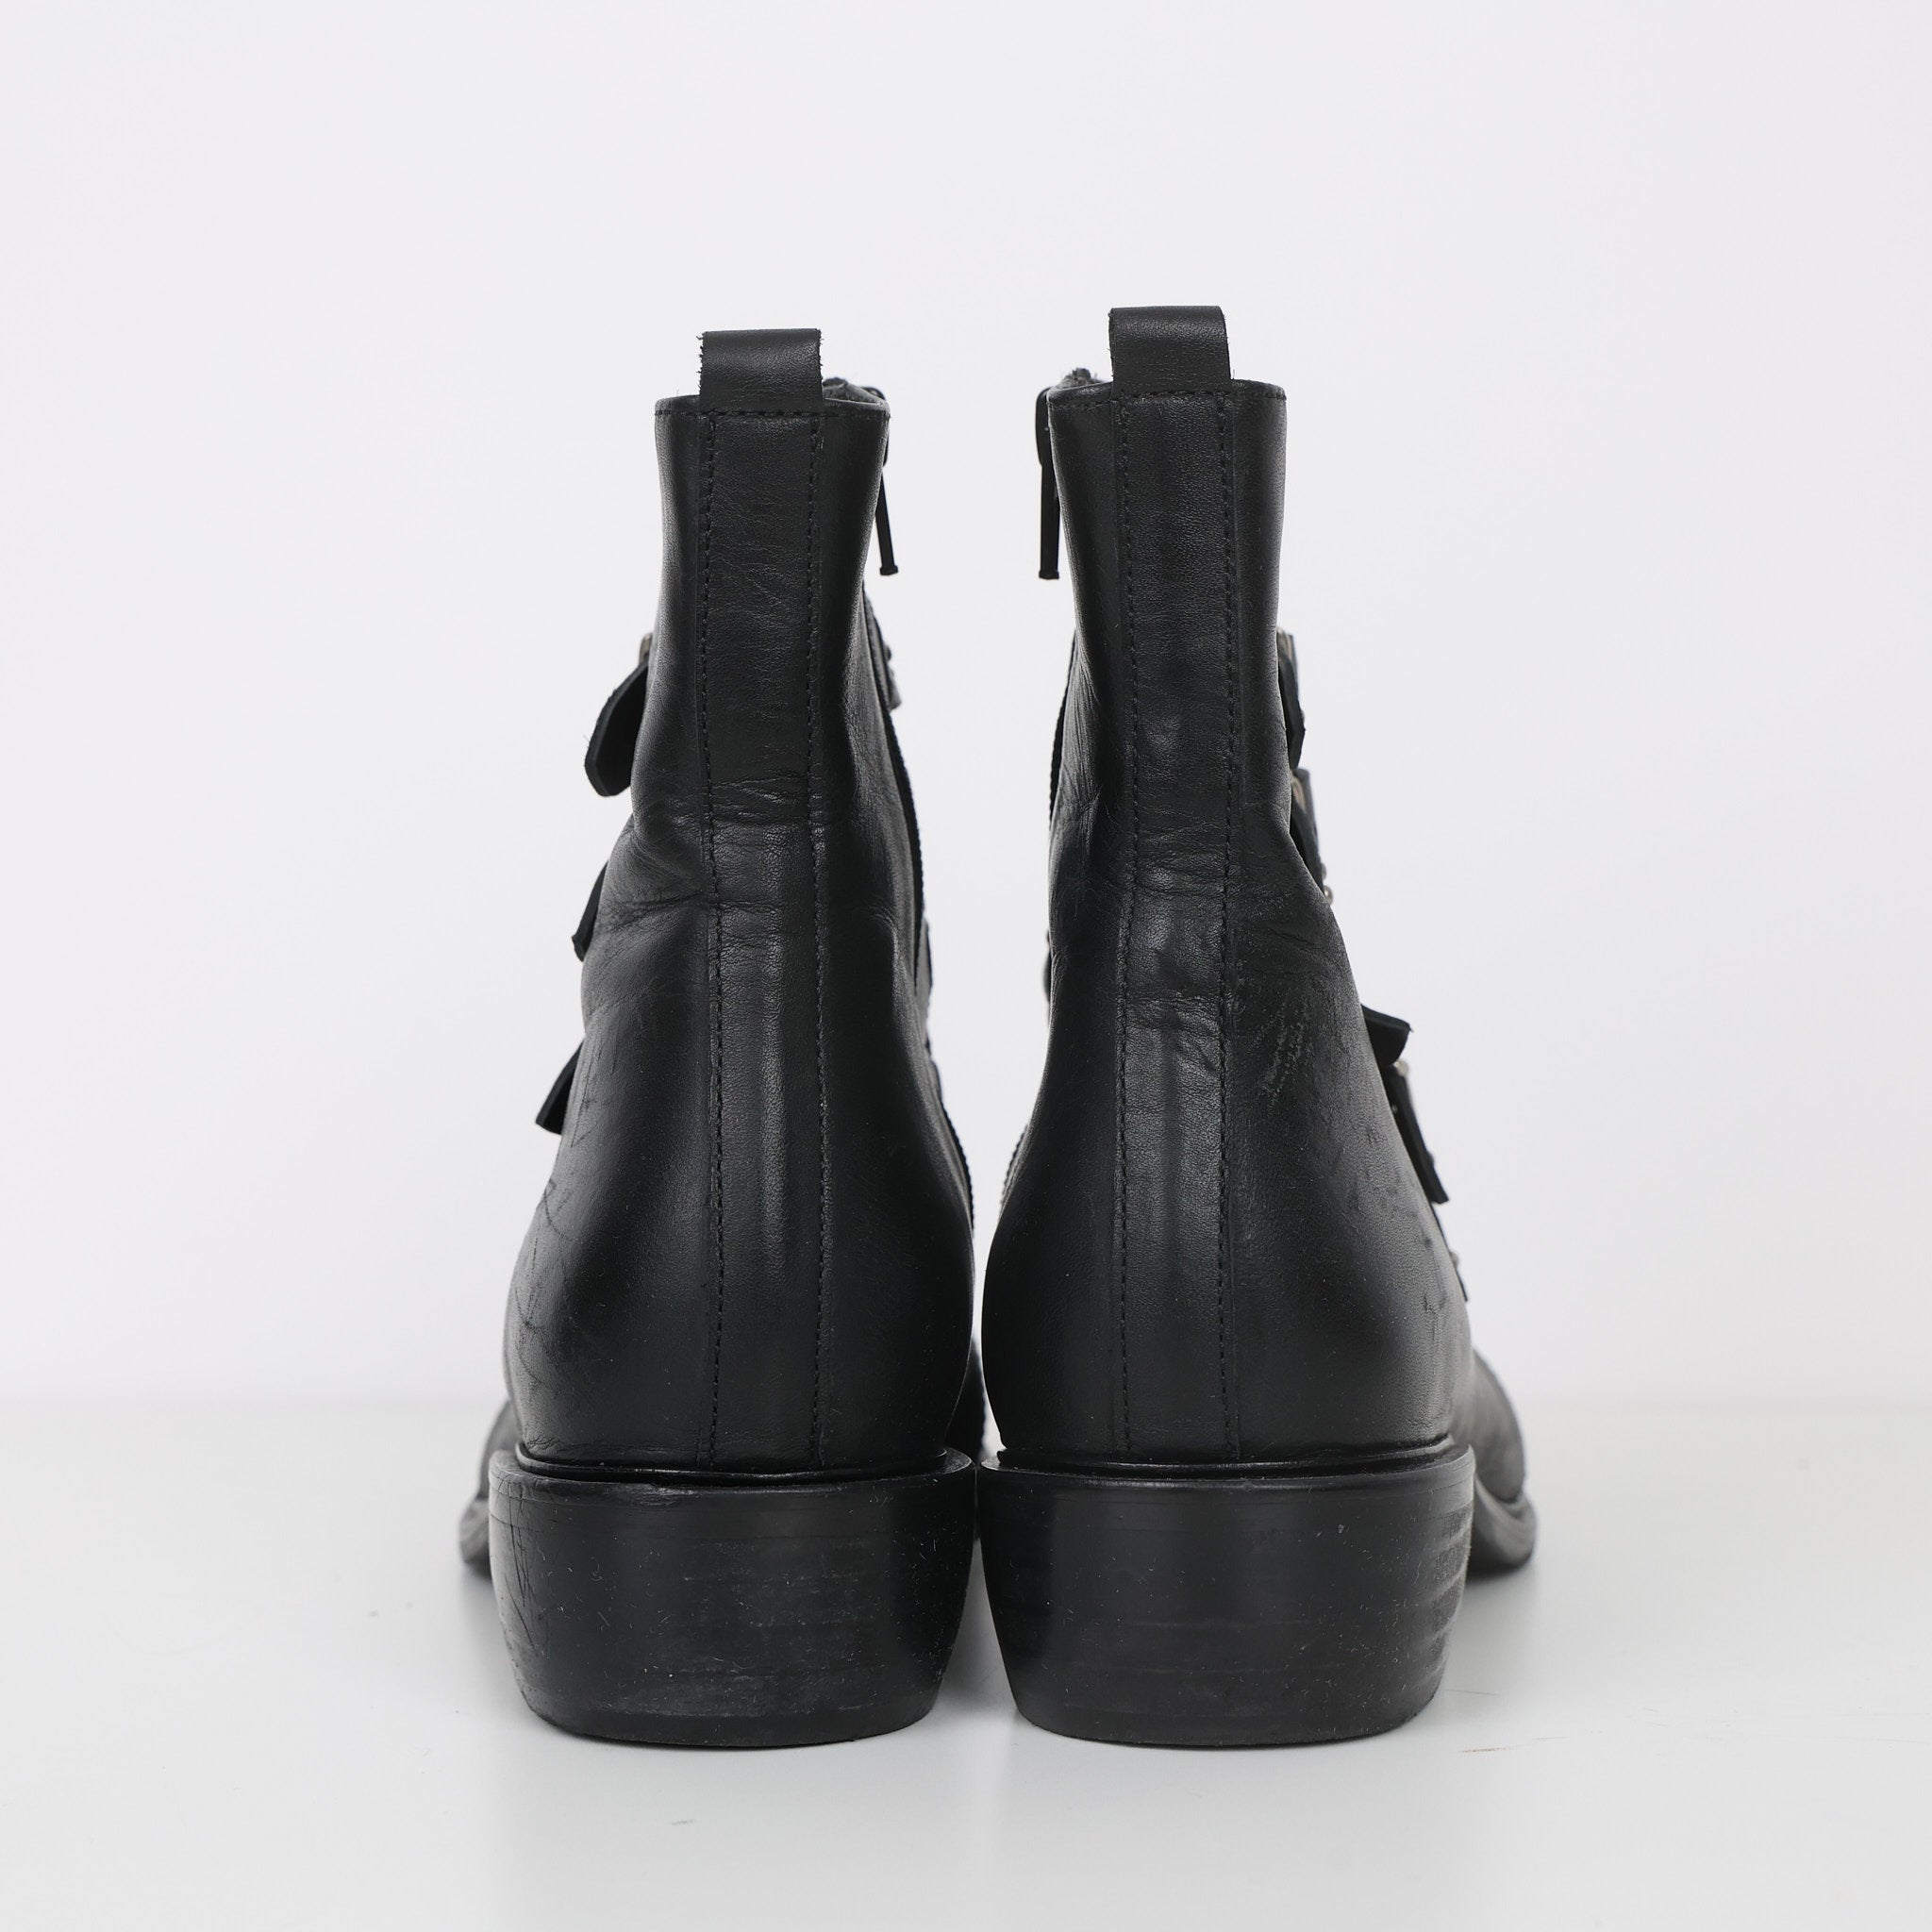 Boots, Shoe Size 38